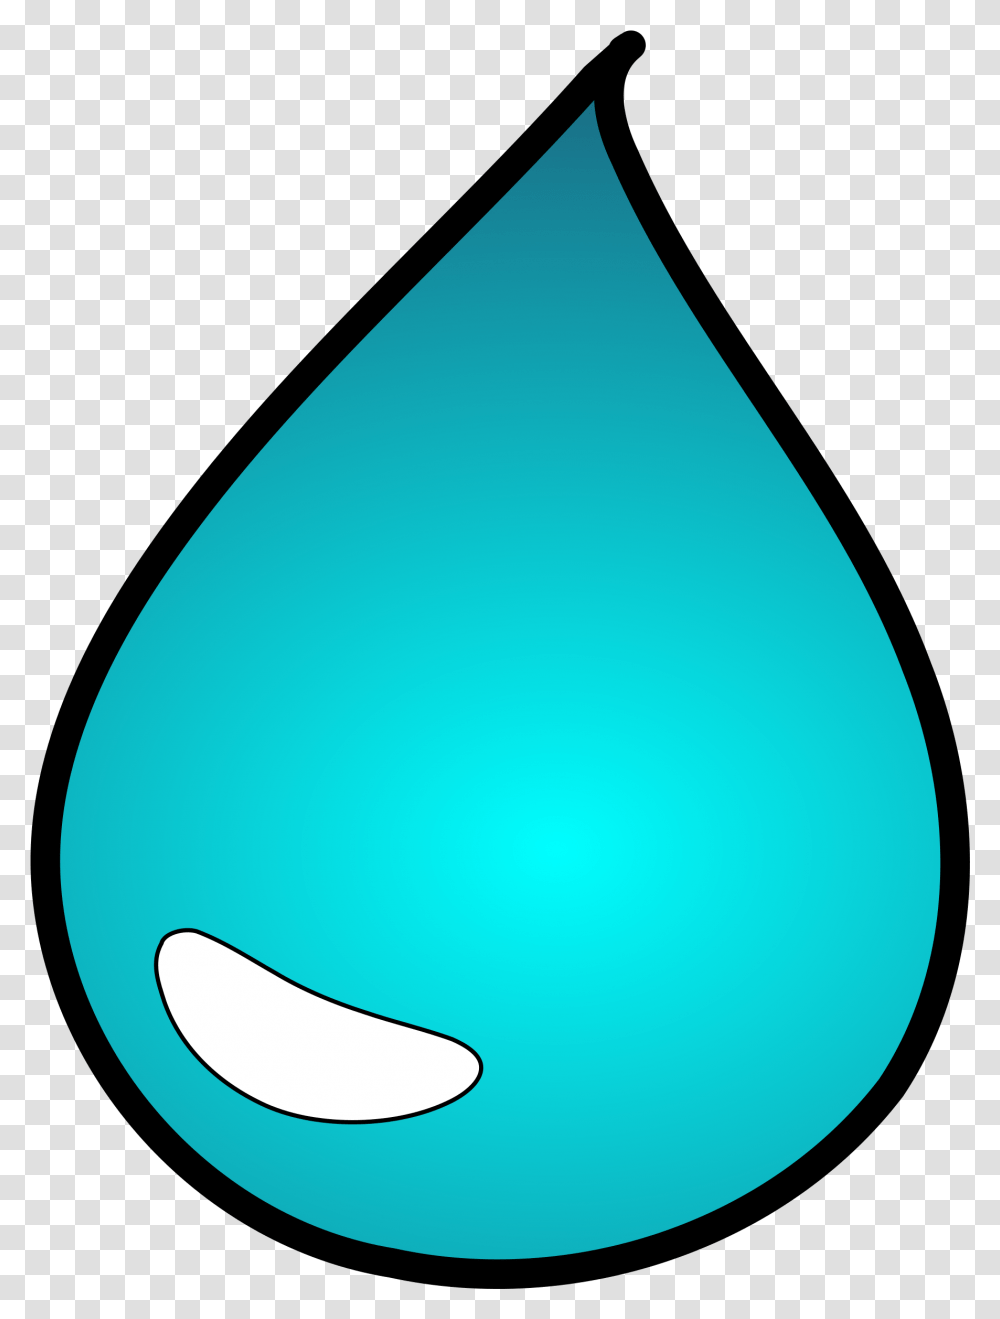 Drops Water Droplet Gota De Agua Dibujo, Balloon Transparent Png